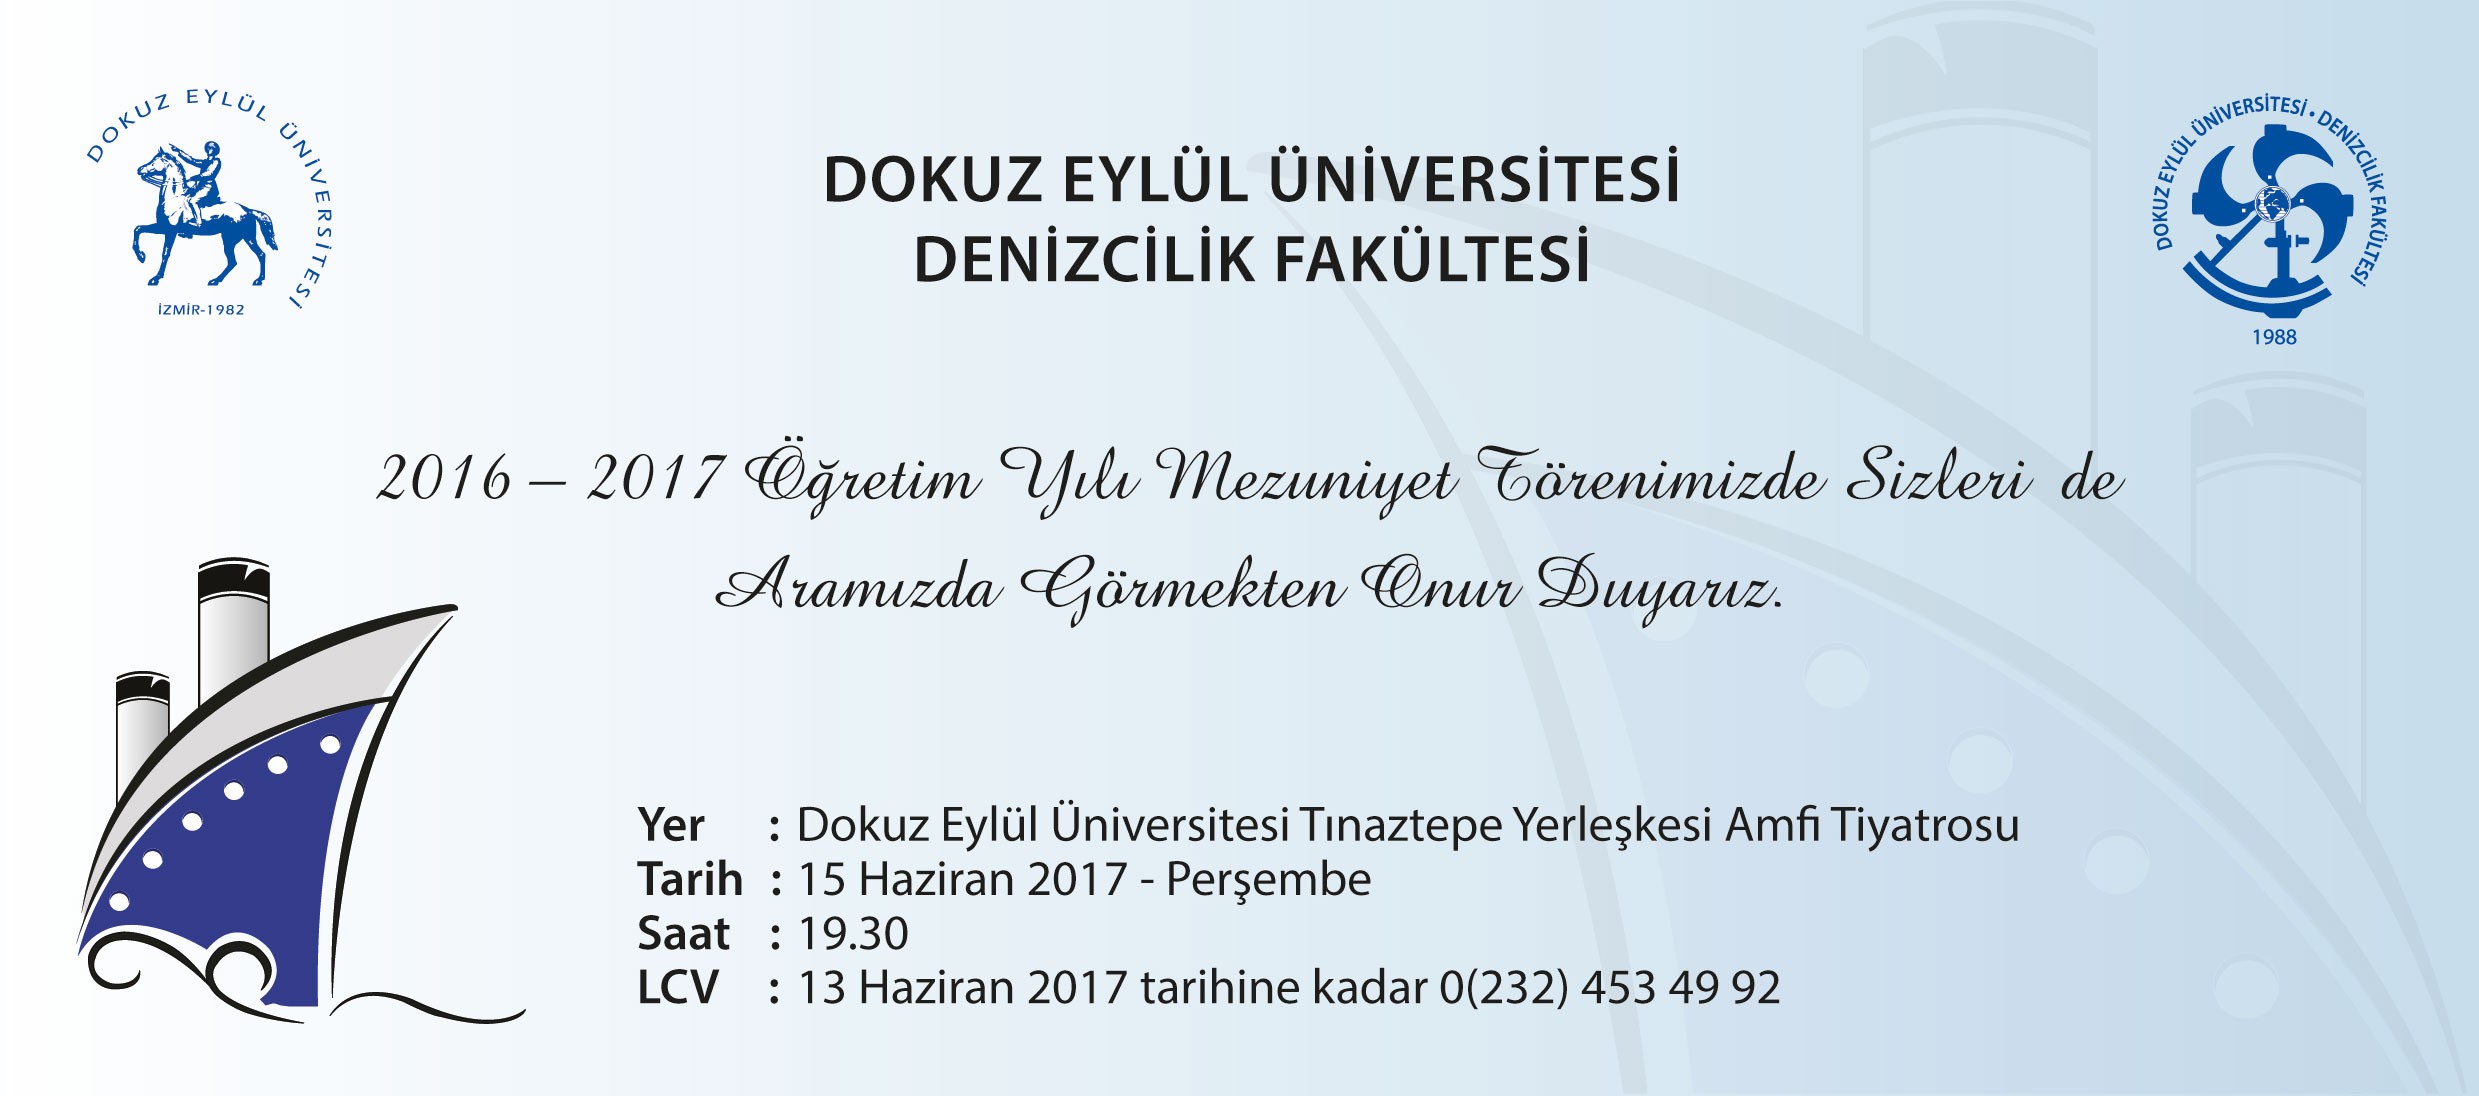 DEU Denizcilik Fakültesi 2016_2017 Yılı Mezuniyet Töreni Davetiyesi.jpg